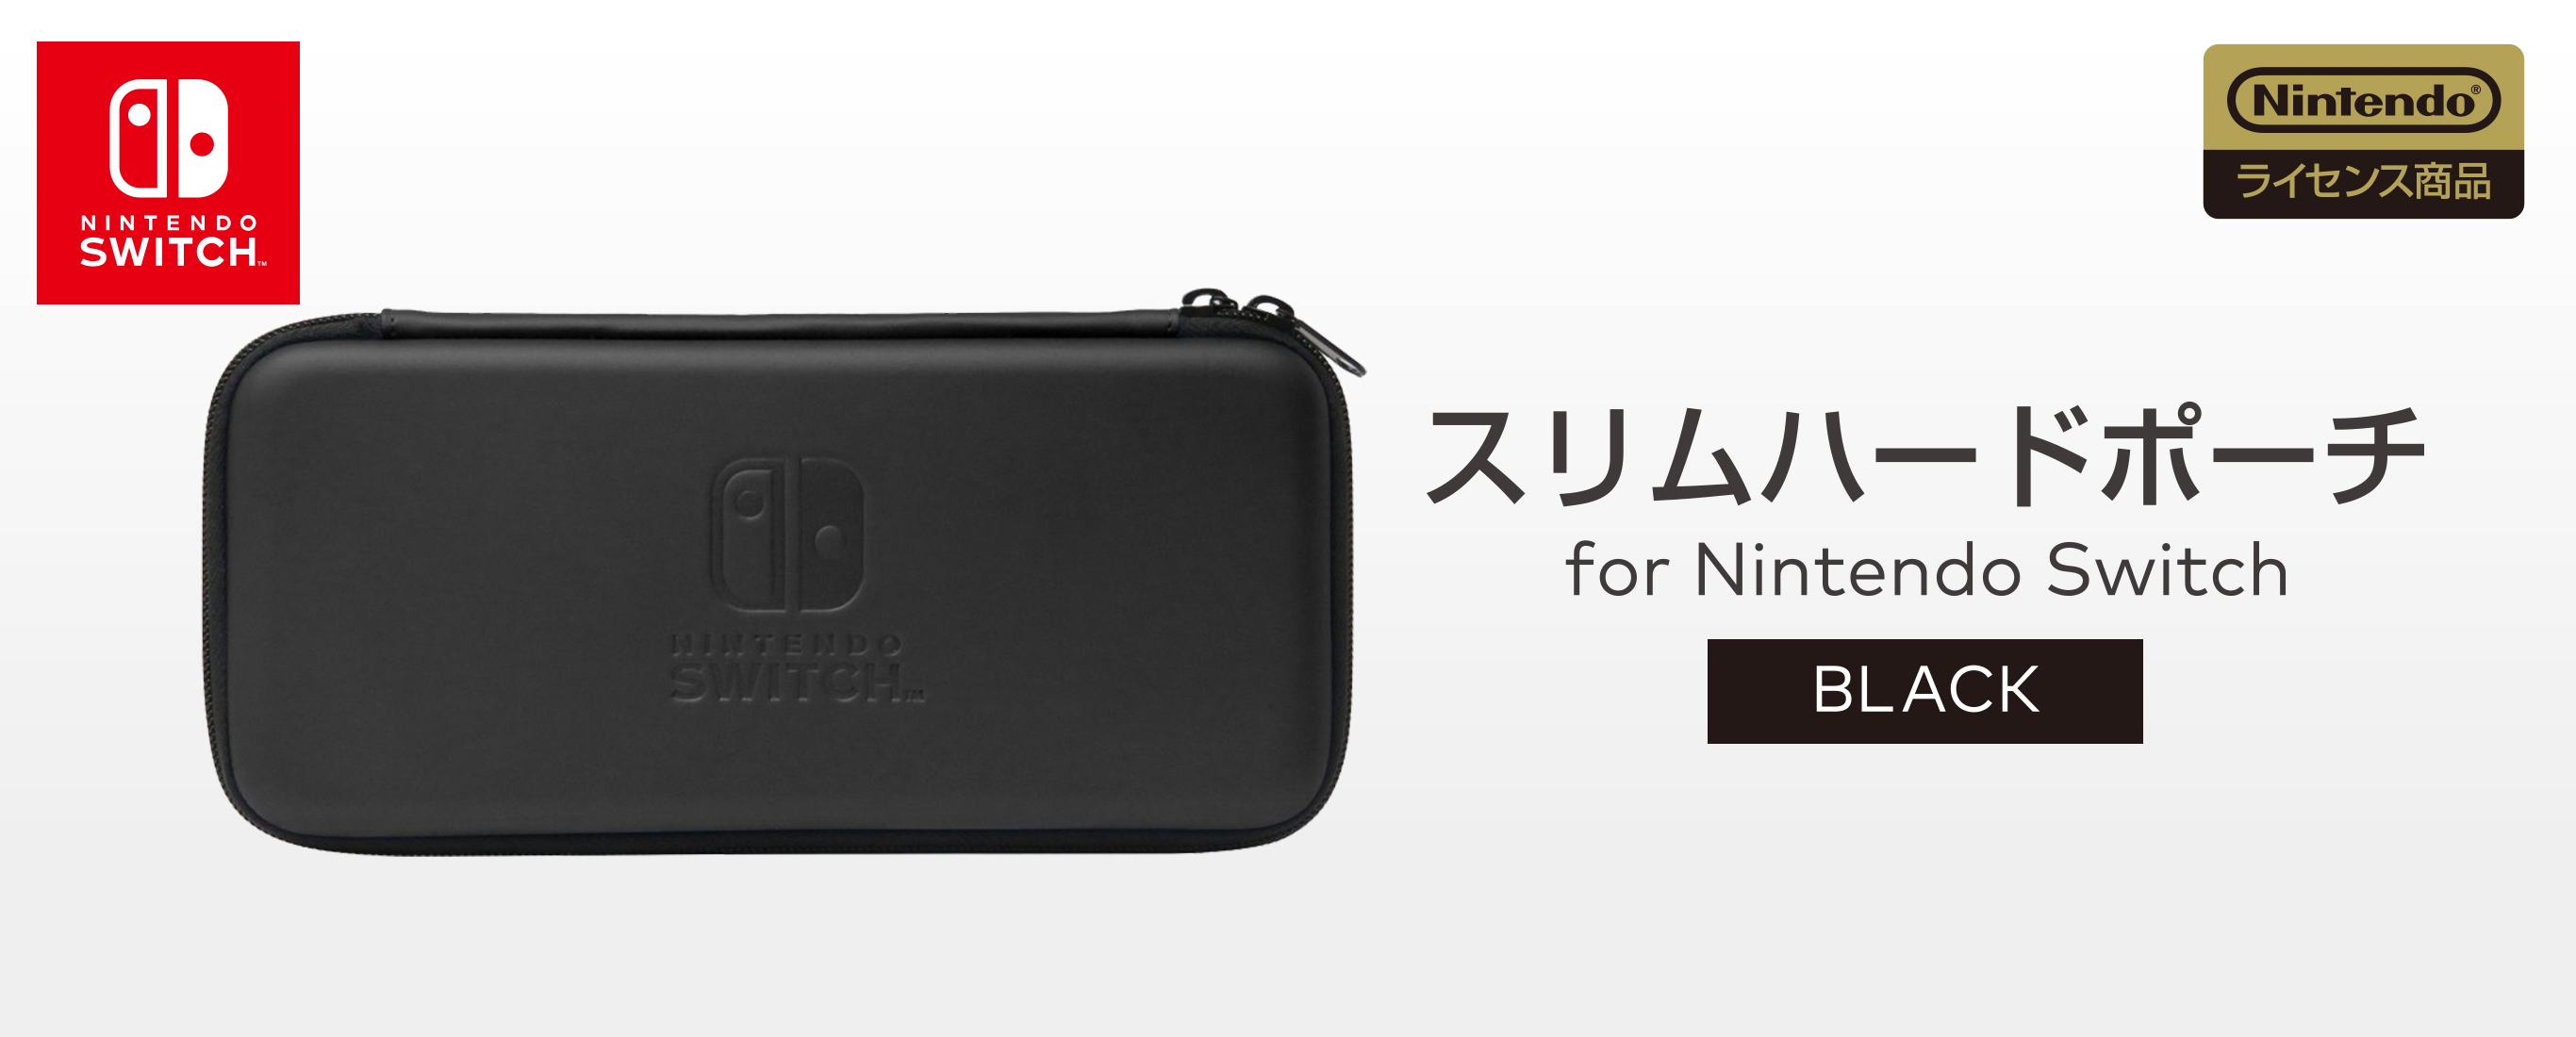 株式会社 HORI | スリムハードポーチ for Nintendo Switch ブラック